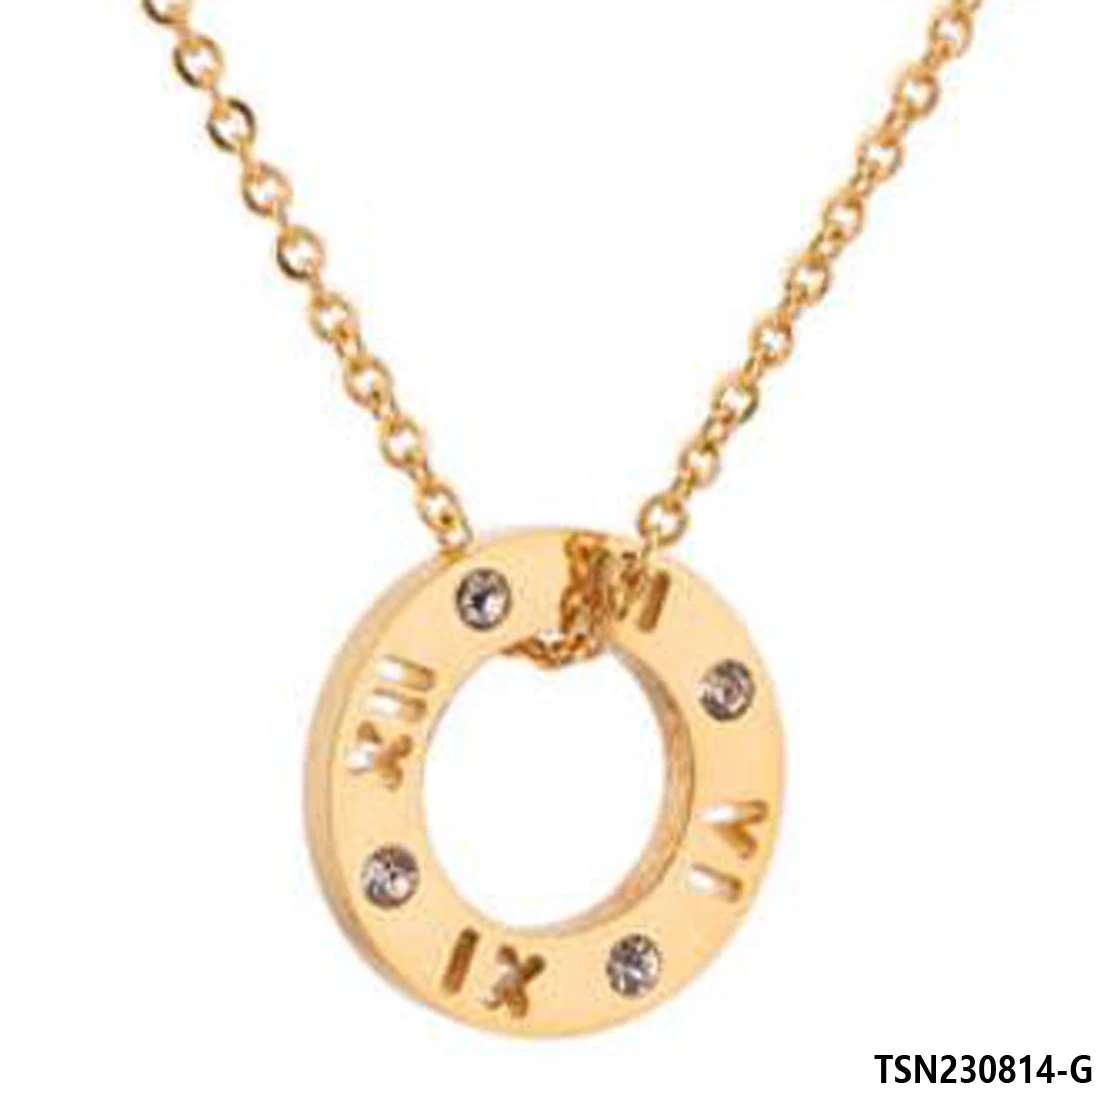 

Женское ожерелье с подвеской, Элегантная модная женская бижутерия, подарки для девушек, золотая цепочка TSN230814